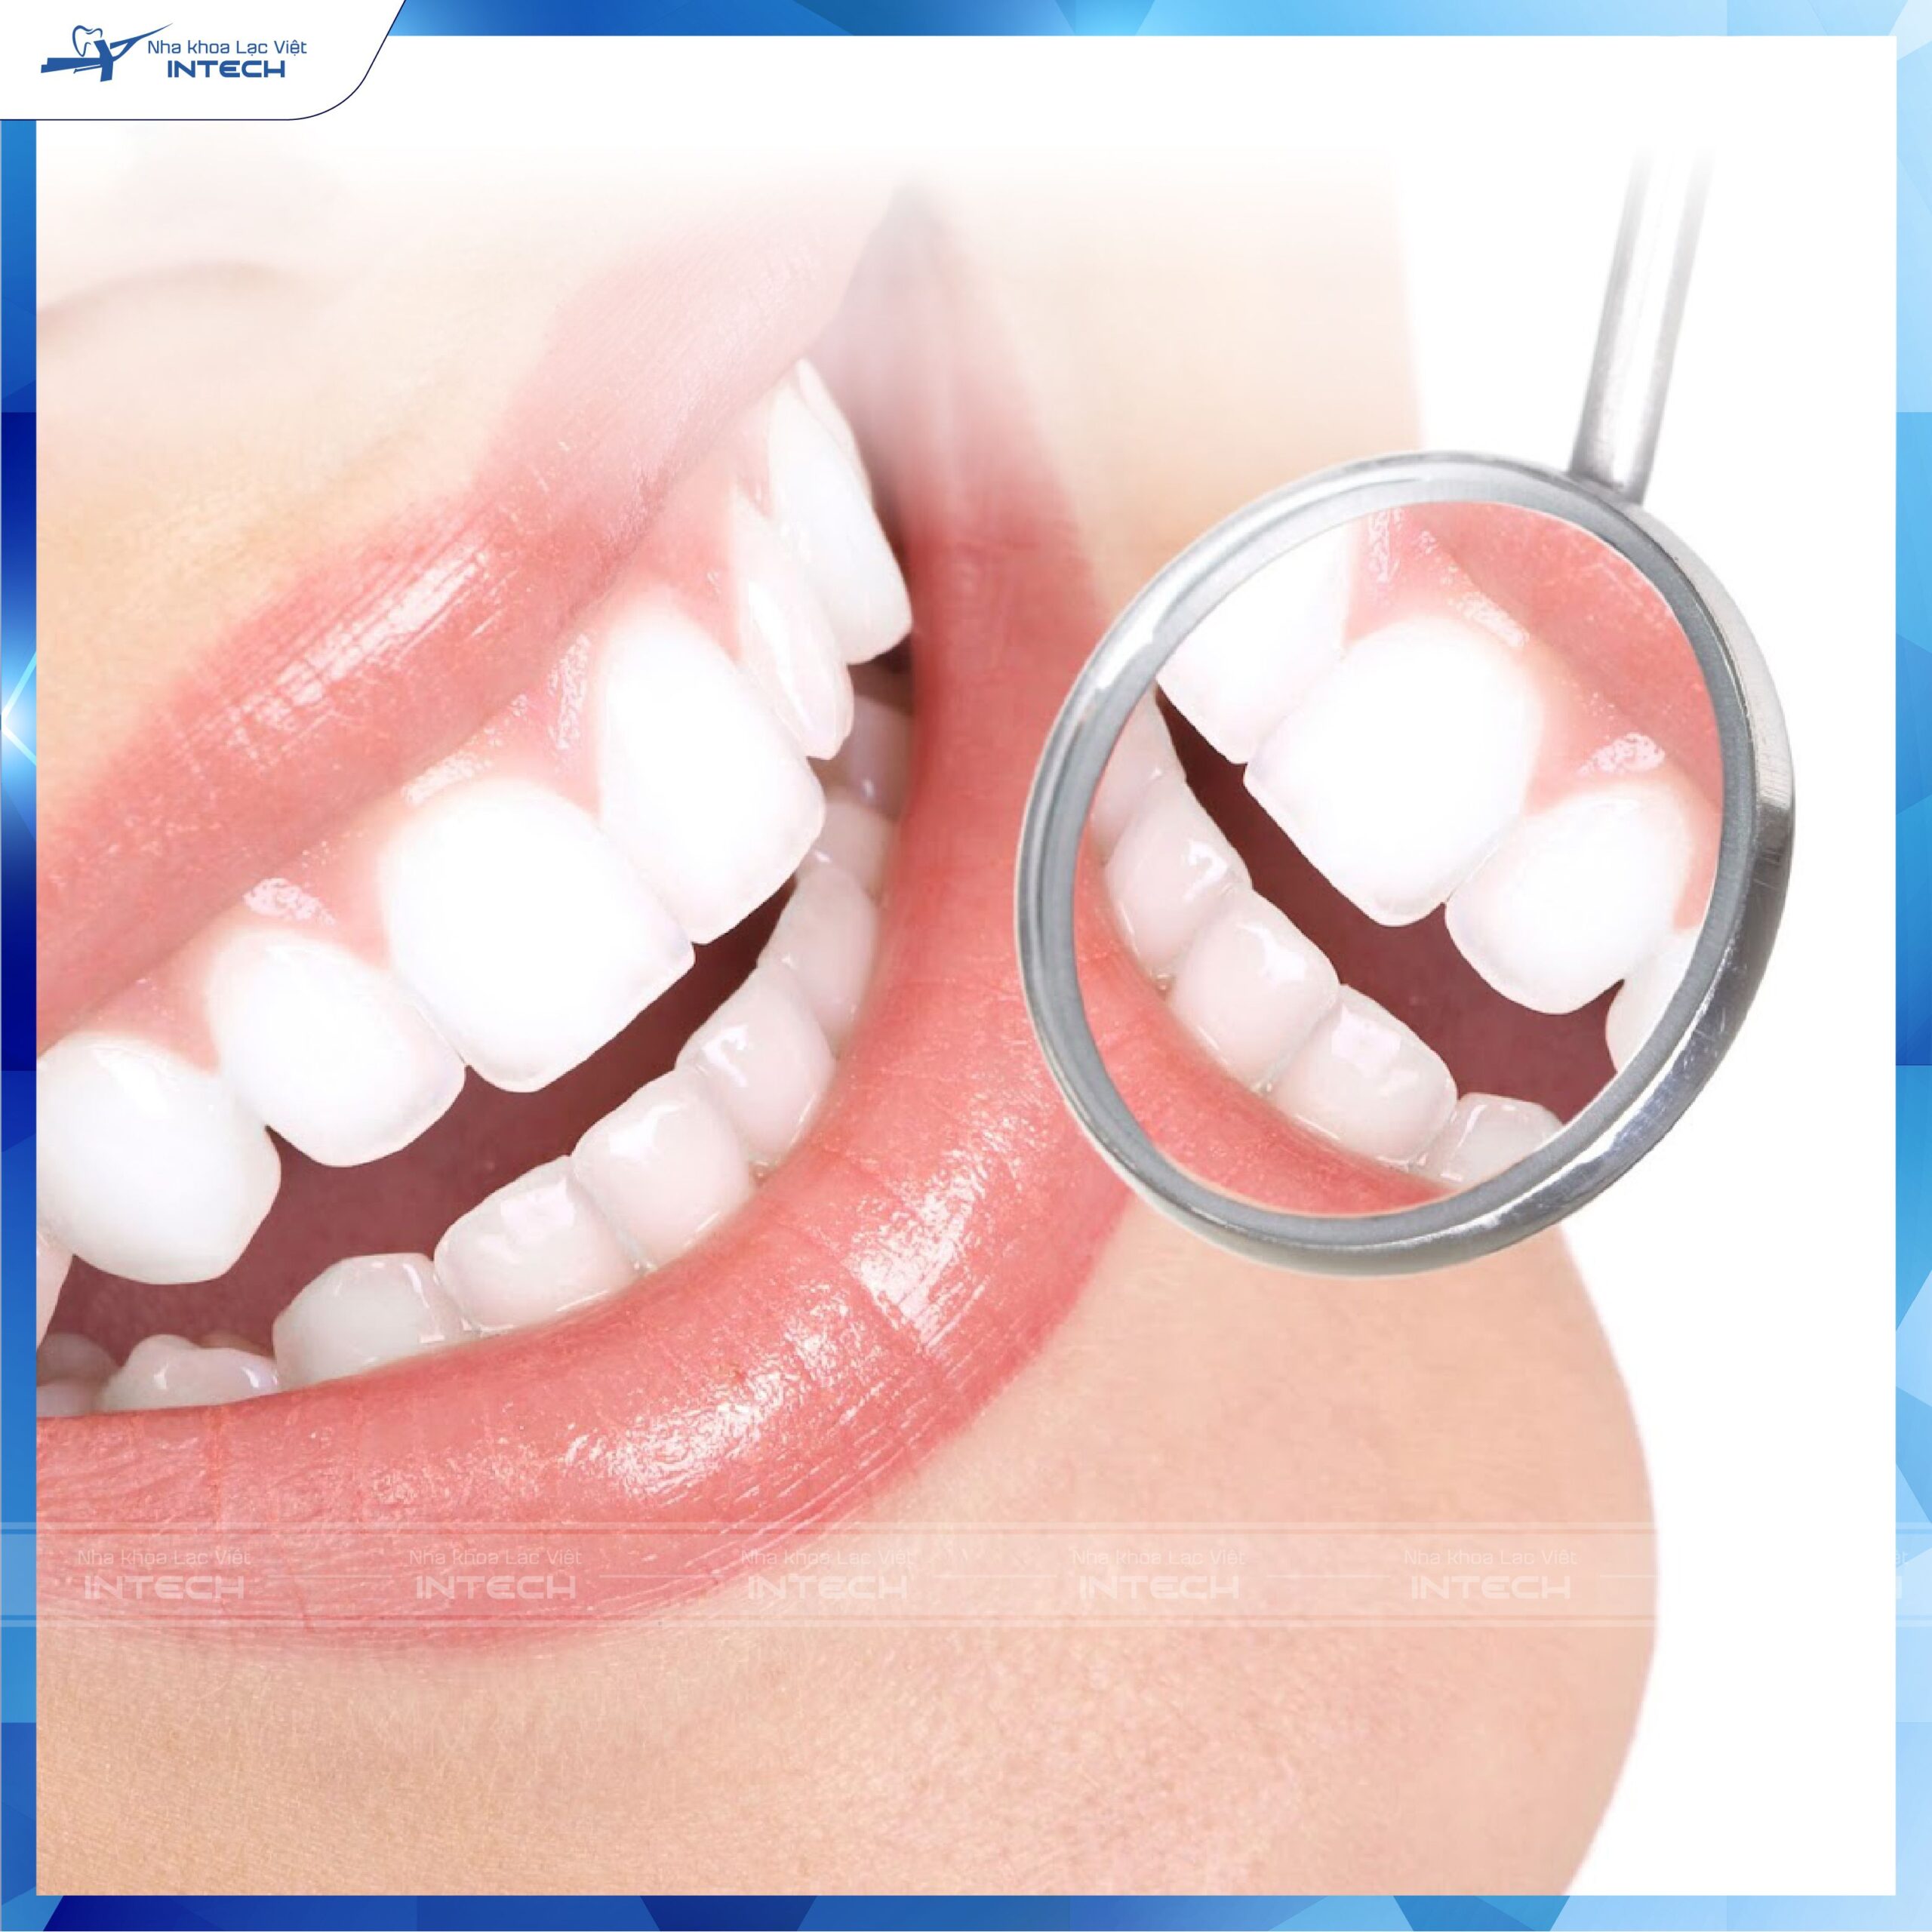 Răng sứ ngày càng được nhiều người ưa chuộng lựa chọn sử dụng